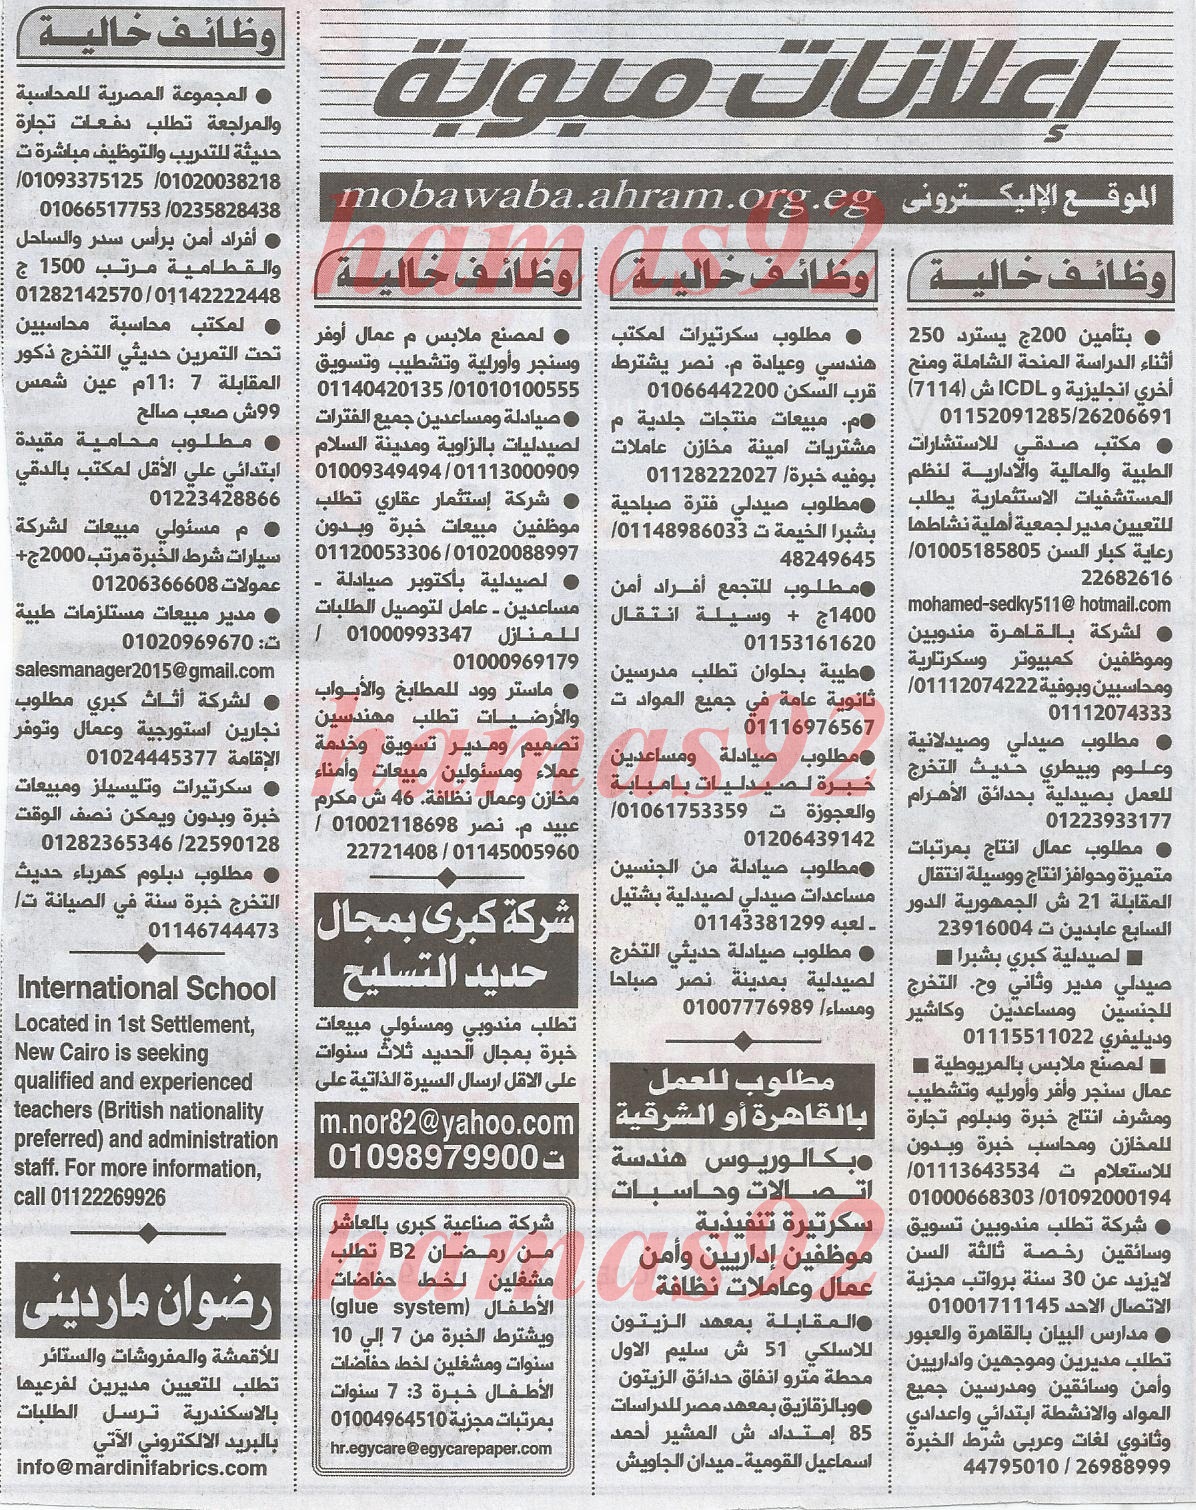 وظائف جريدة الاهرام اليوم الخميس 30-1-2014 , وظائف خالية من الاهرام 30 يناير 2014